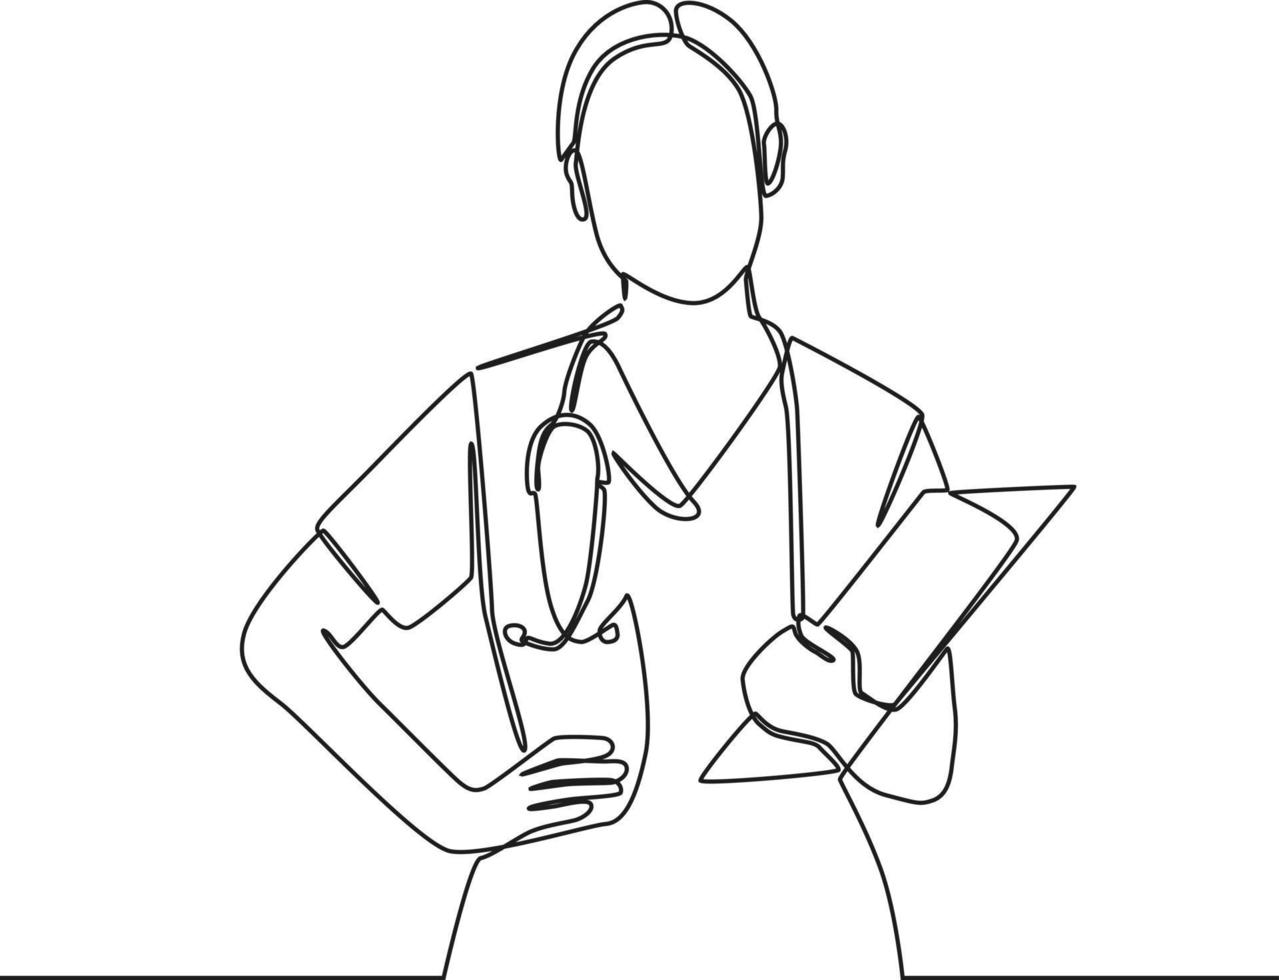 il medico della donna del disegno continuo di una linea porta uno stetoscopio sulla spalla e una nota. illustrazione grafica vettoriale di disegno a linea singola.